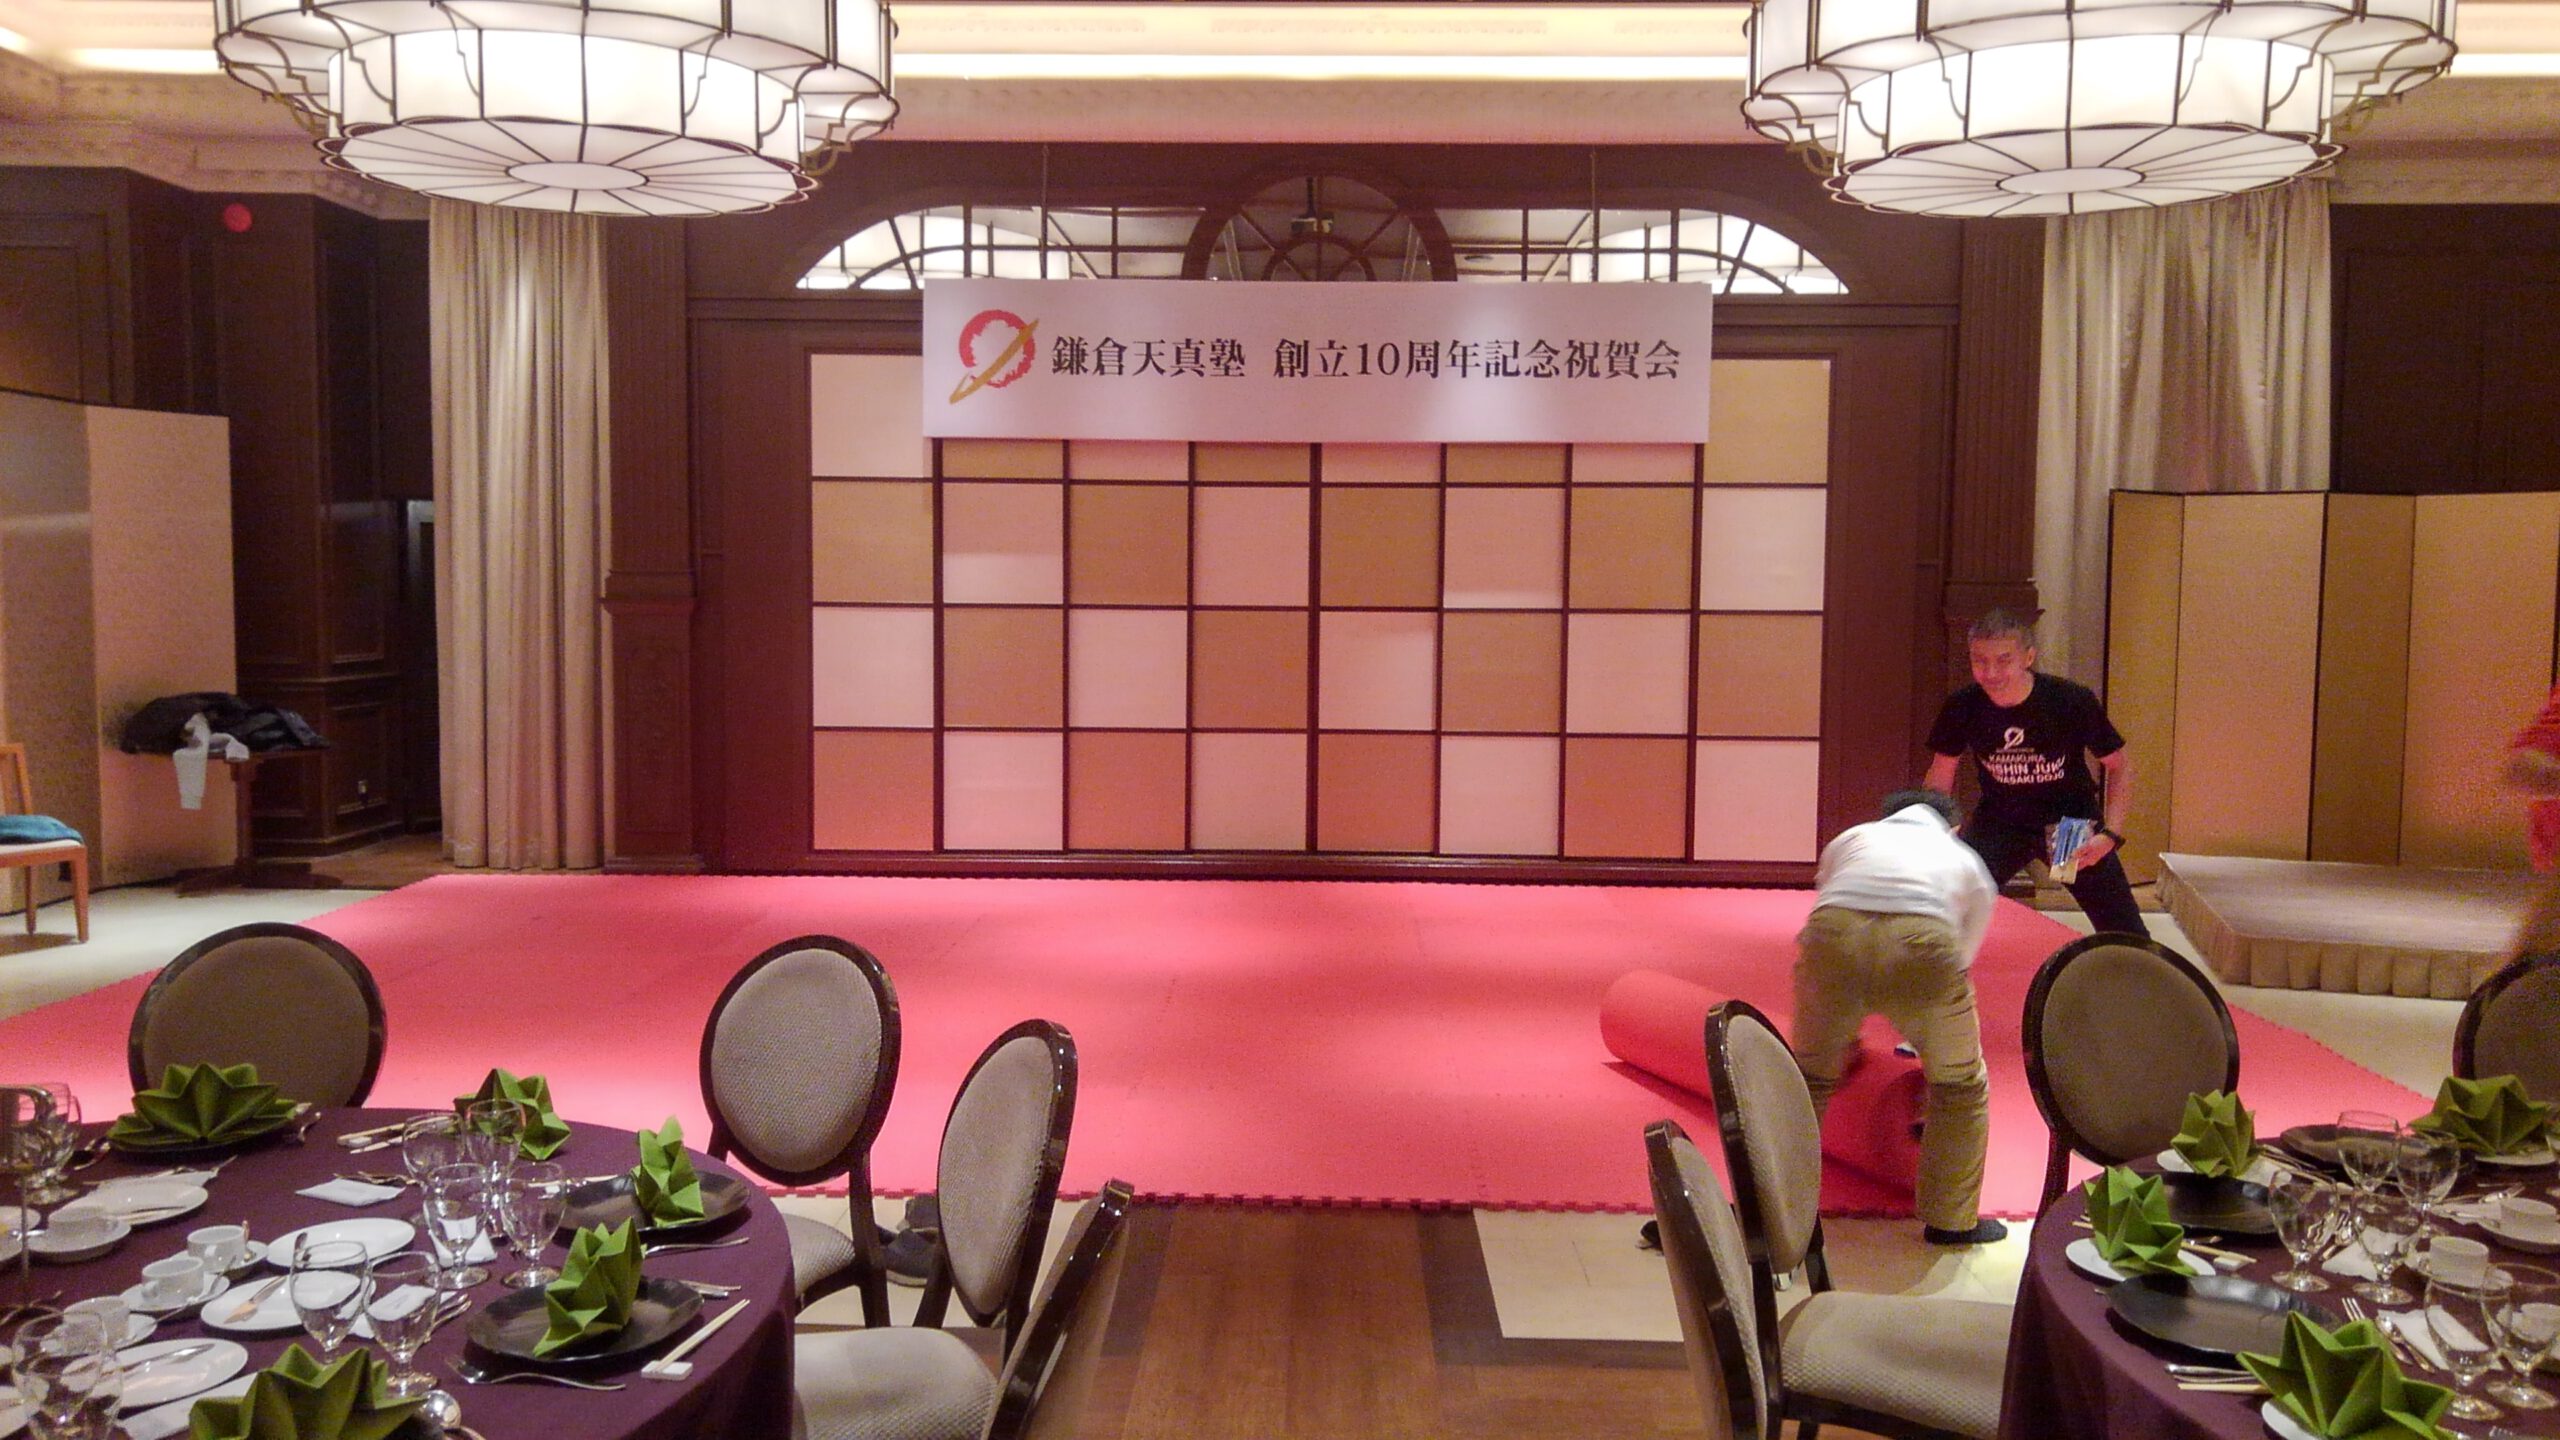 鎌倉にてイベントマットがレンタルされました。実際に設置した様子の写真。